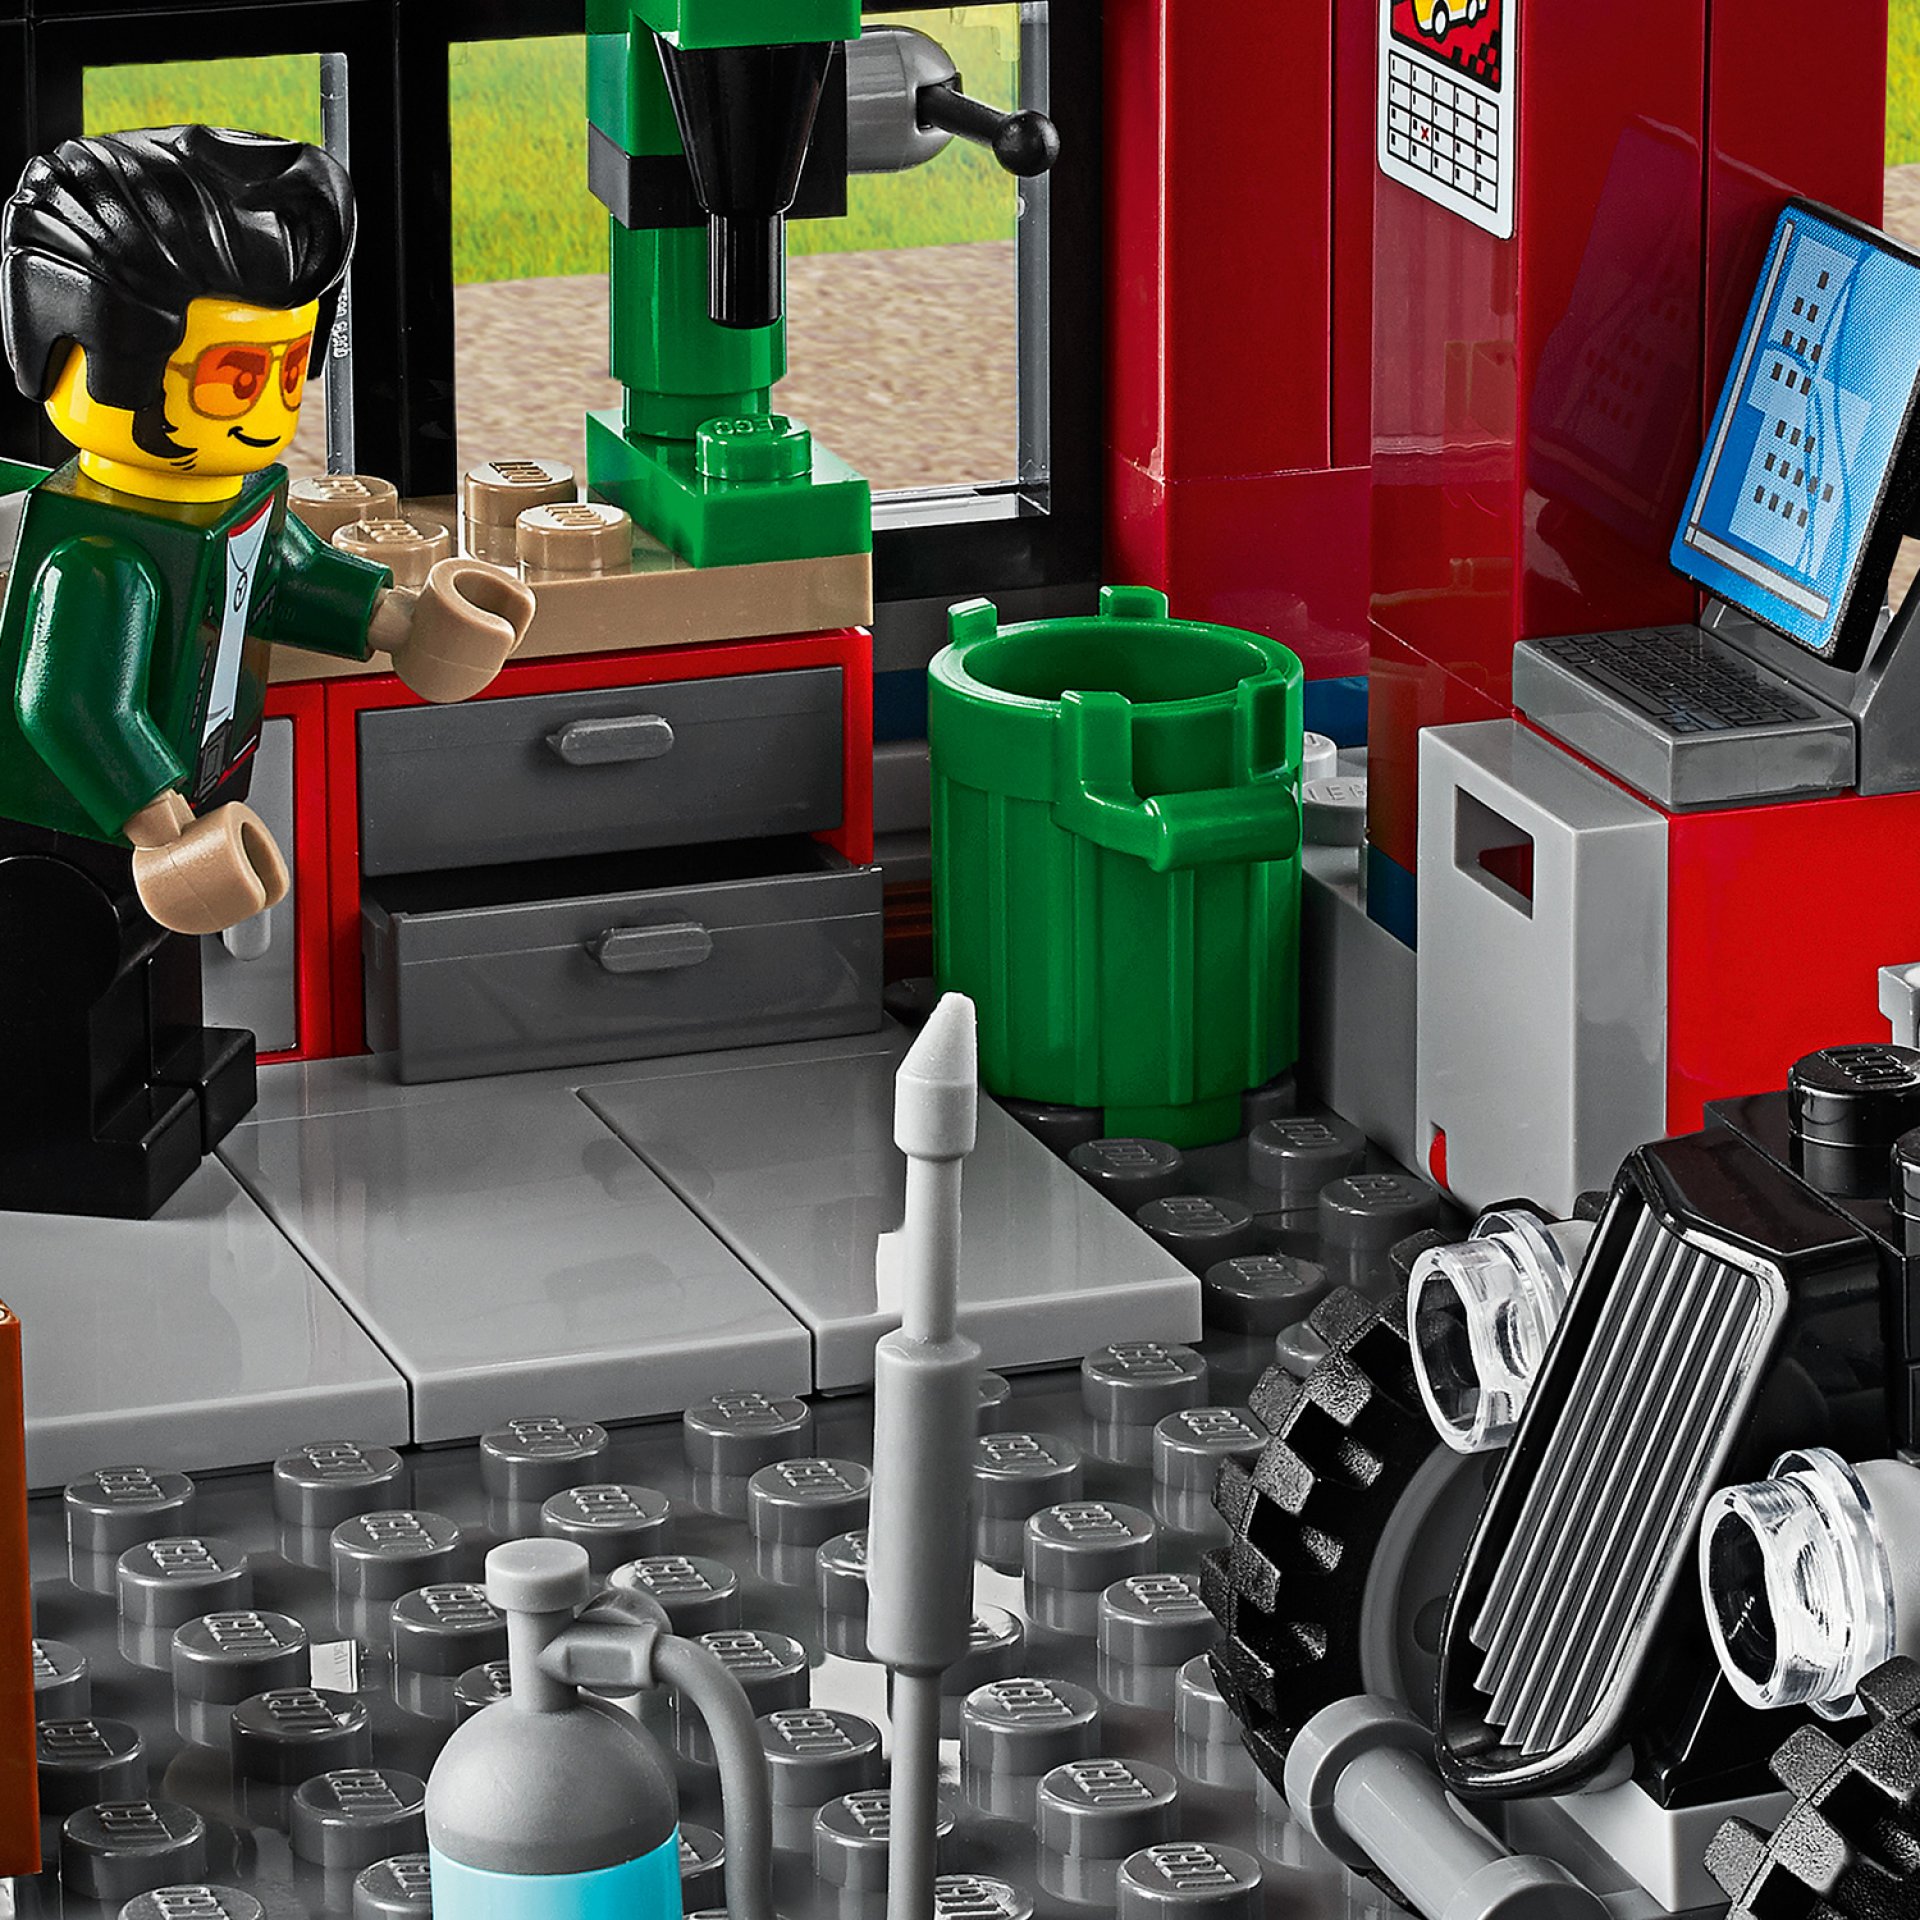 LEGO City Nitro Wheels Autofficina, Set da Costruzione, Macchine Giocattolo per 60258, , large